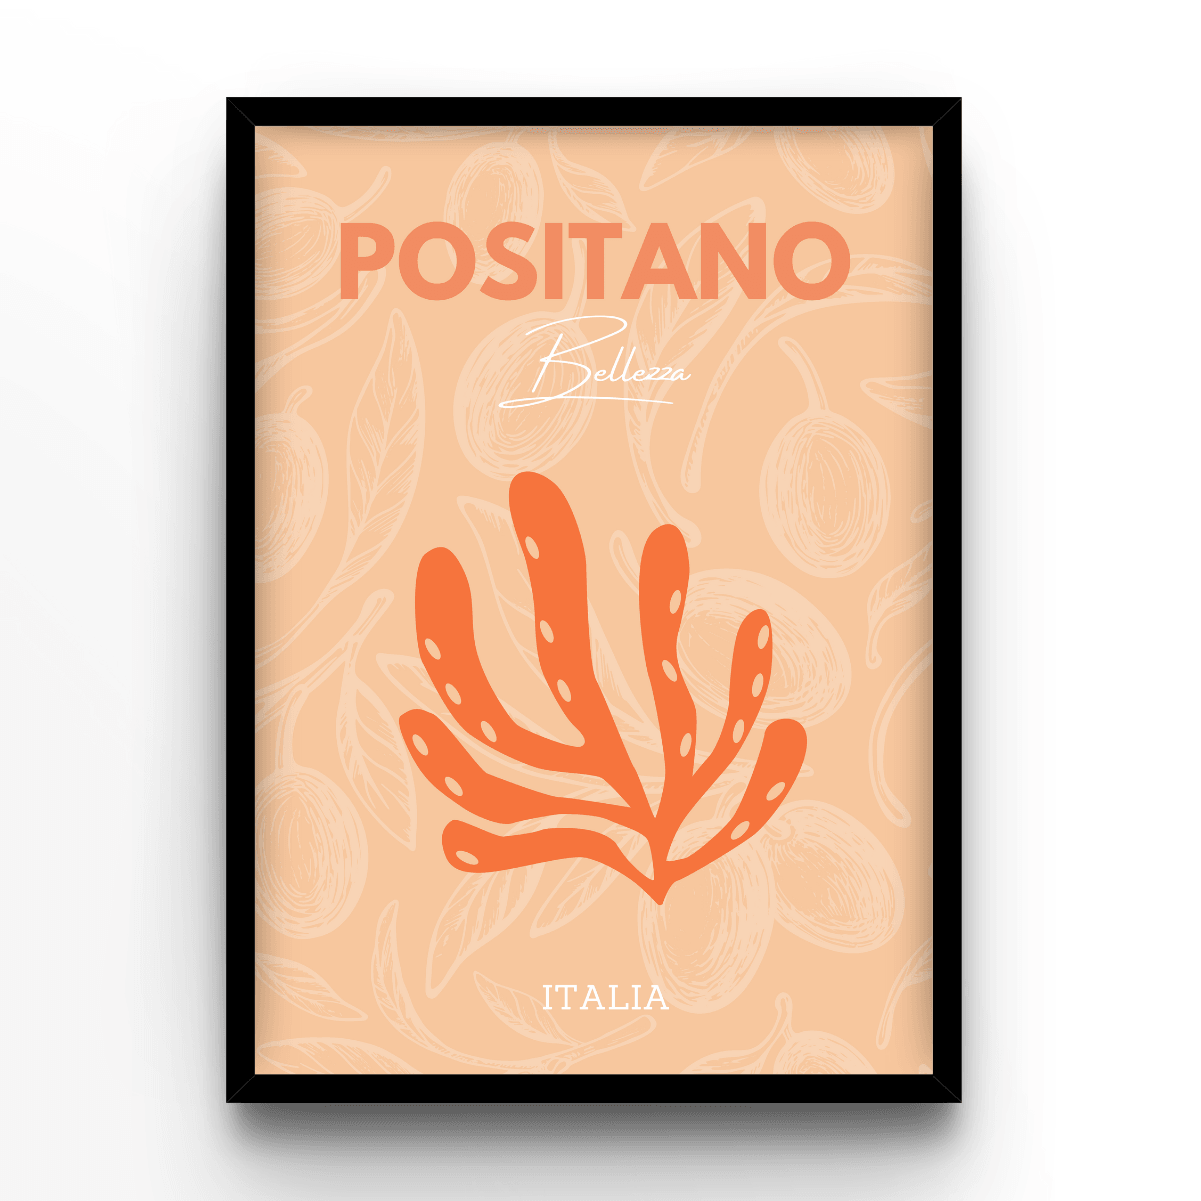 Positano - A4, A3, A2 Posters Base - Poster Print Shop / Art Prints / PostersBase